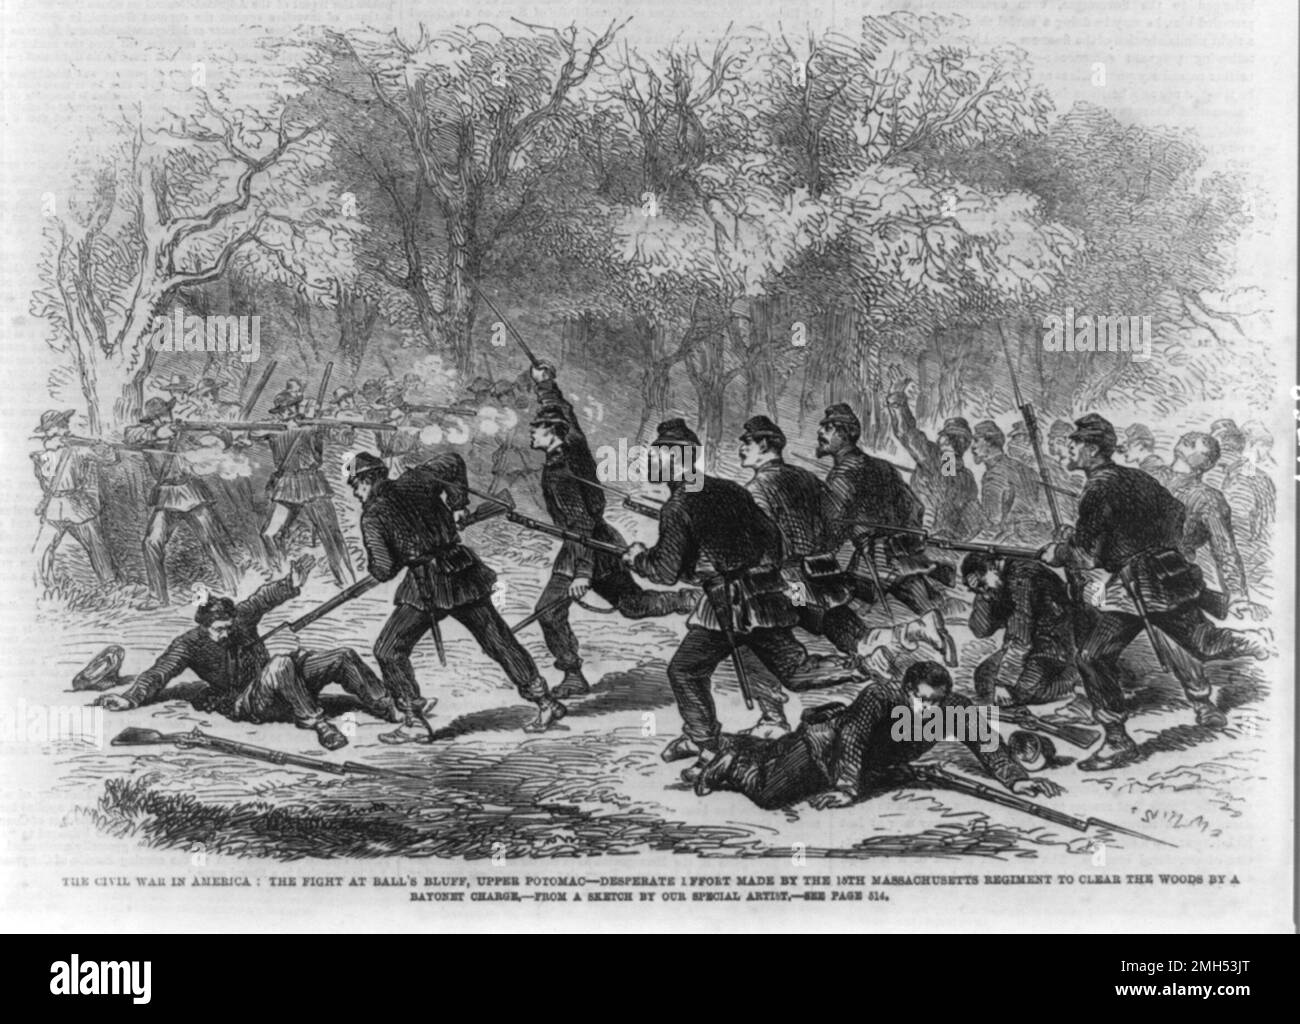 La Batalla de Ball's Bluff fue una batalla en la Guerra Civil Americana que se libró el 21st 1861 de octubre. Fue ganado por las fuerzas confederadas bajo el general Nathan Evans y el senador unionista, que luchaba como coronel, fue asesinado en la acción. Esta pintura representa la carga de una bayoneta por las tropas unionistas Foto de stock